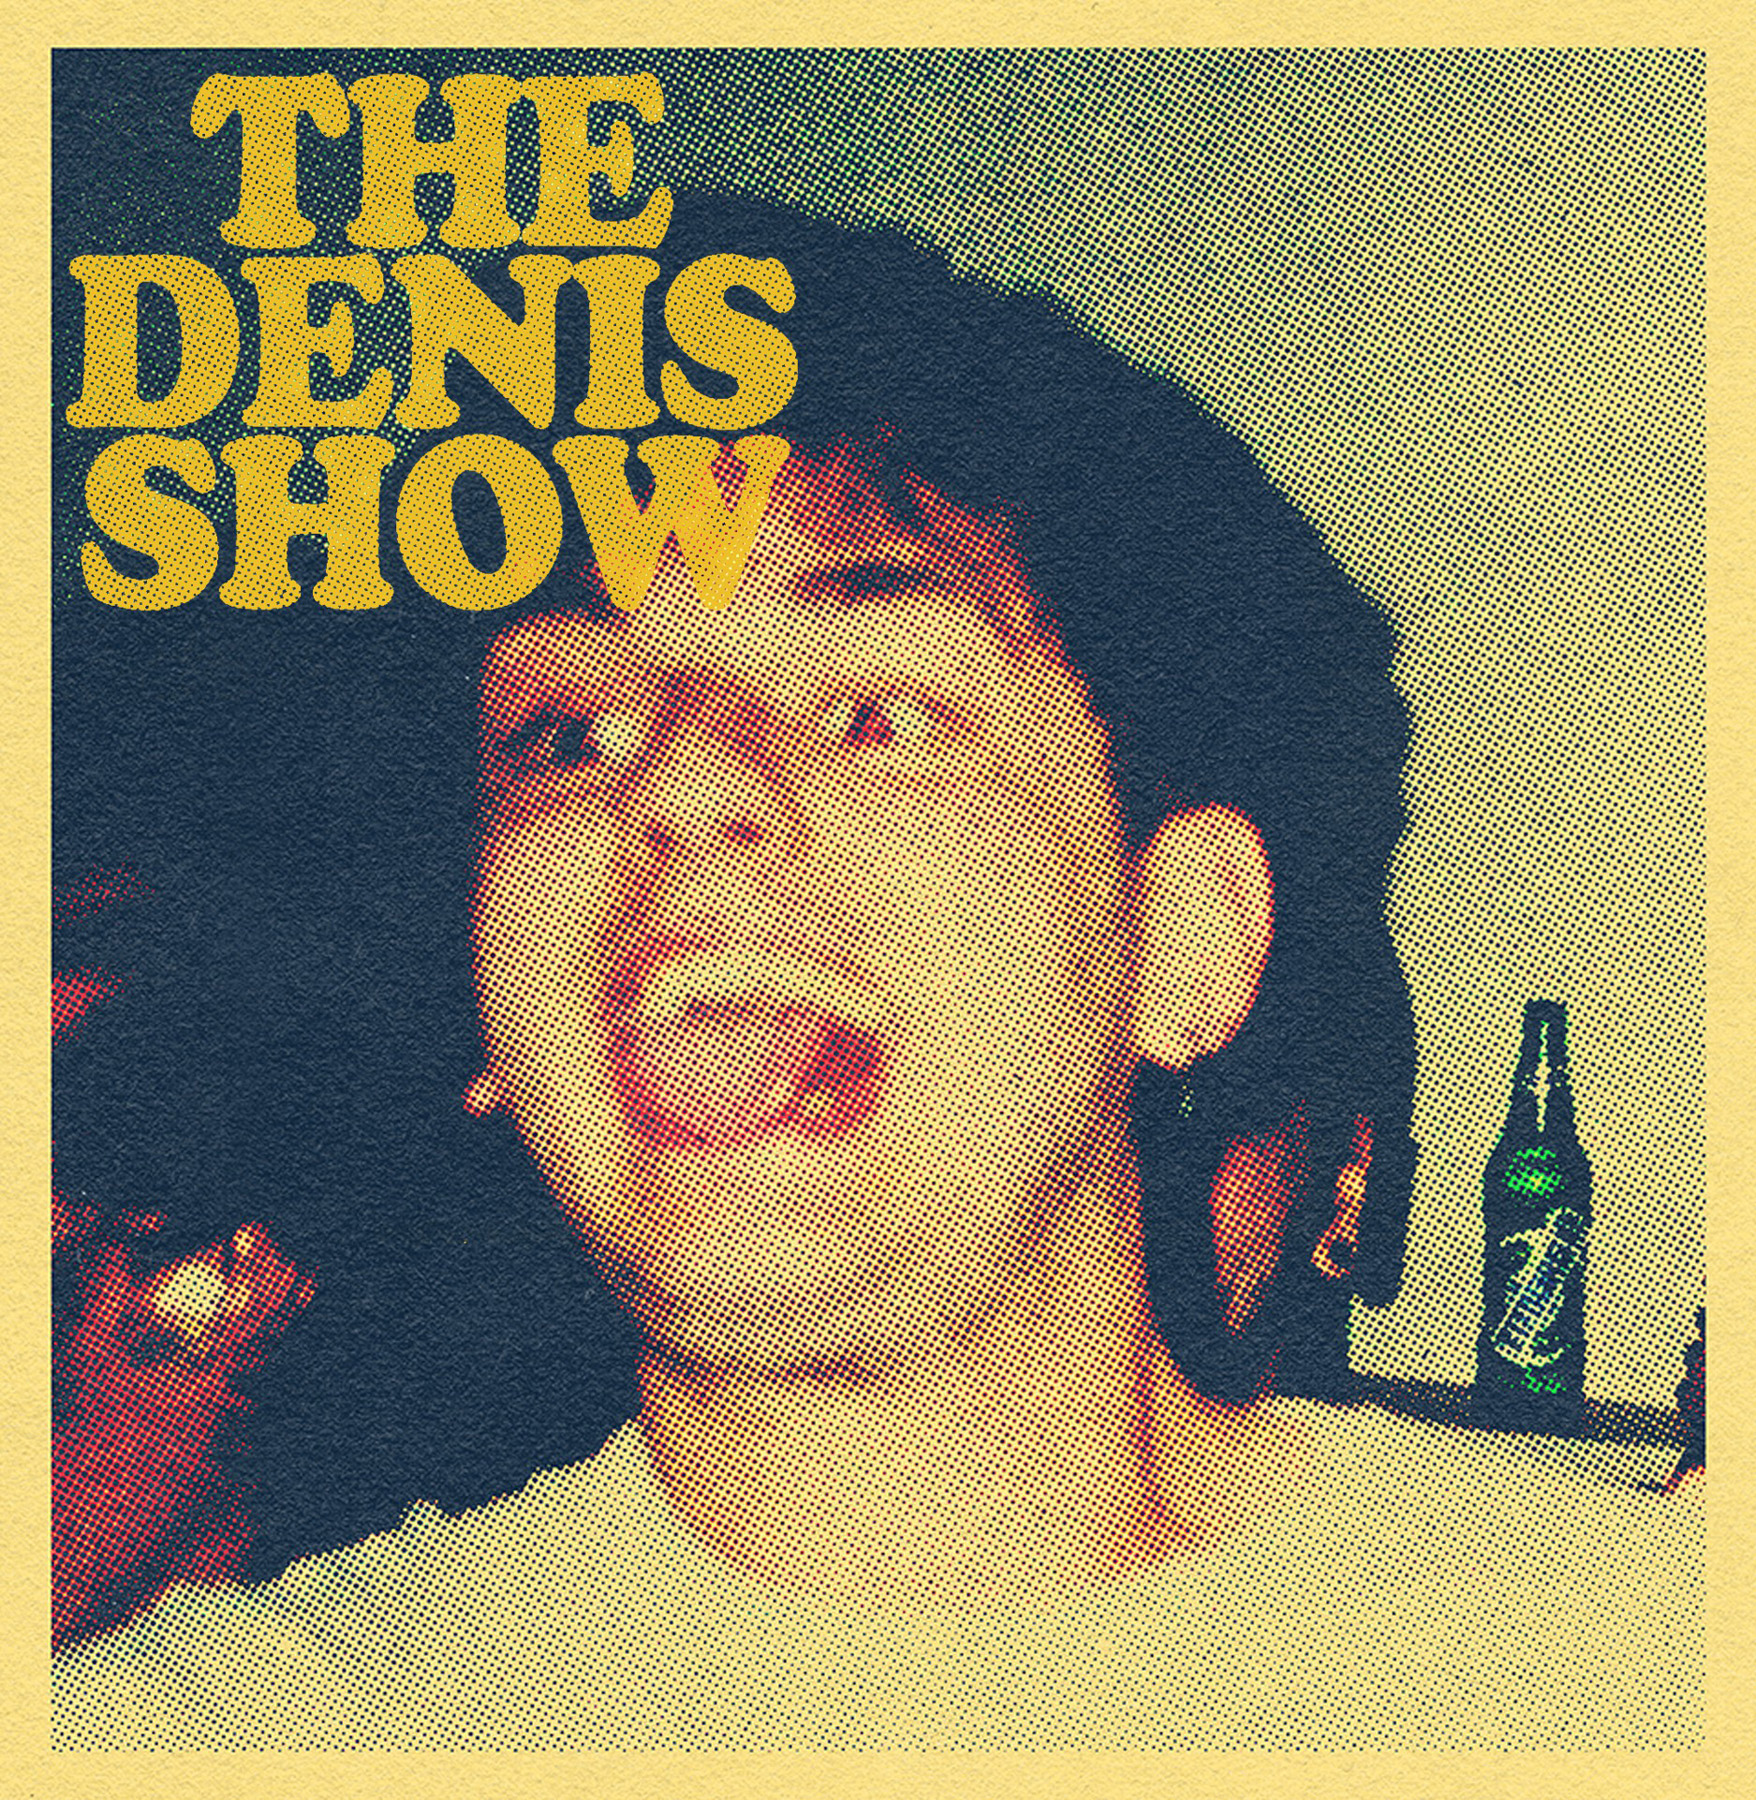 The Denis Show